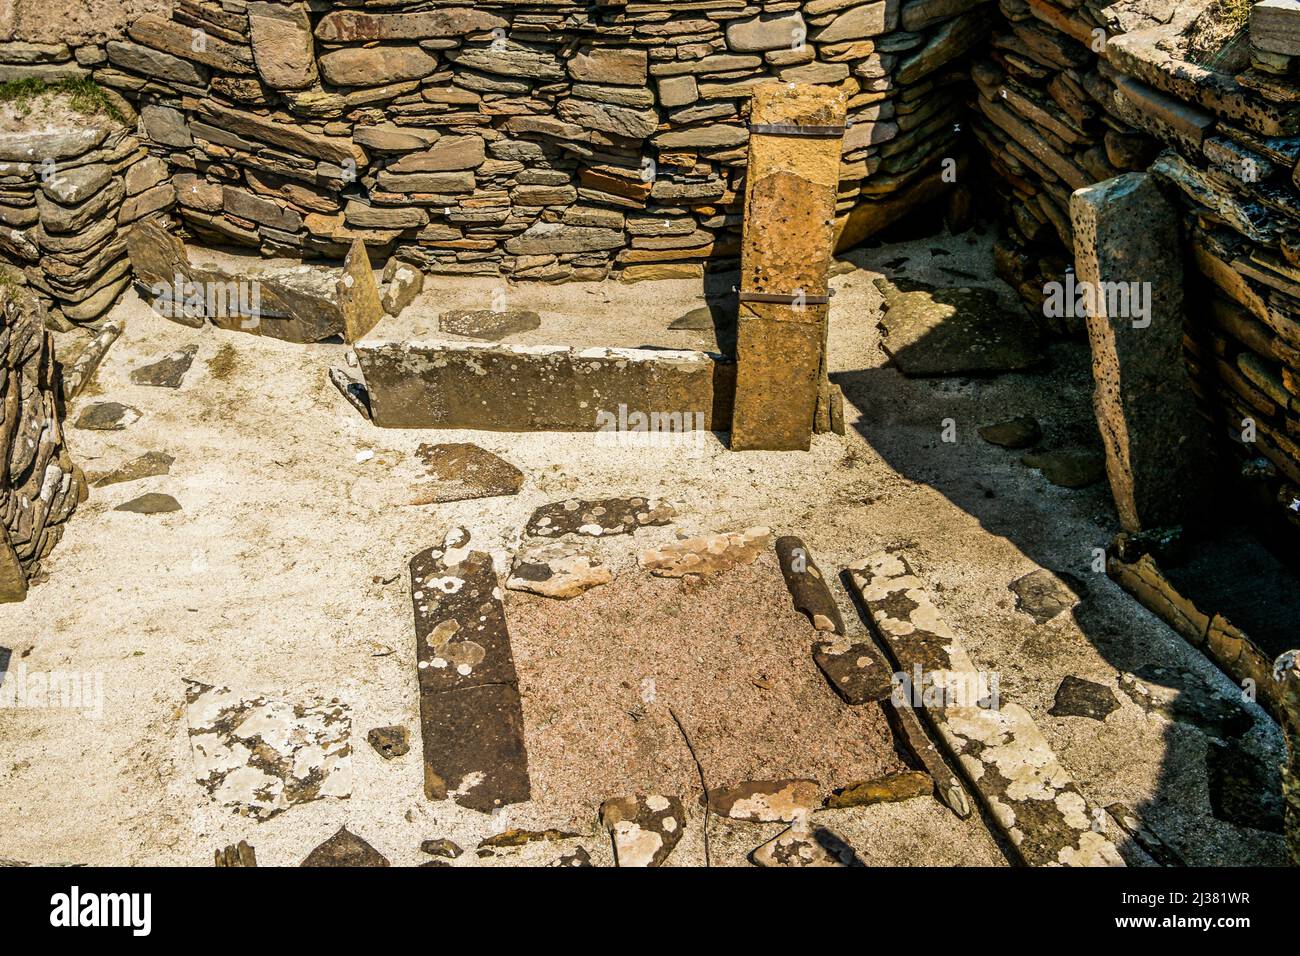 Sito archeologico neolitico di Skara Brae. Baia di Skaill, Isole Orkney, Scozia, Regno Unito. Foto Stock